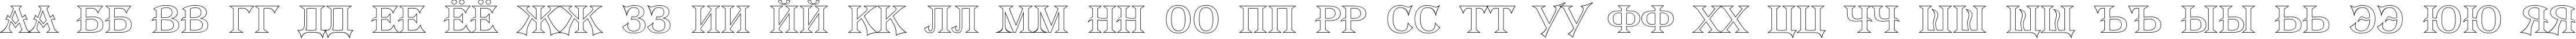 Пример написания русского алфавита шрифтом a_AlgeriusOtl